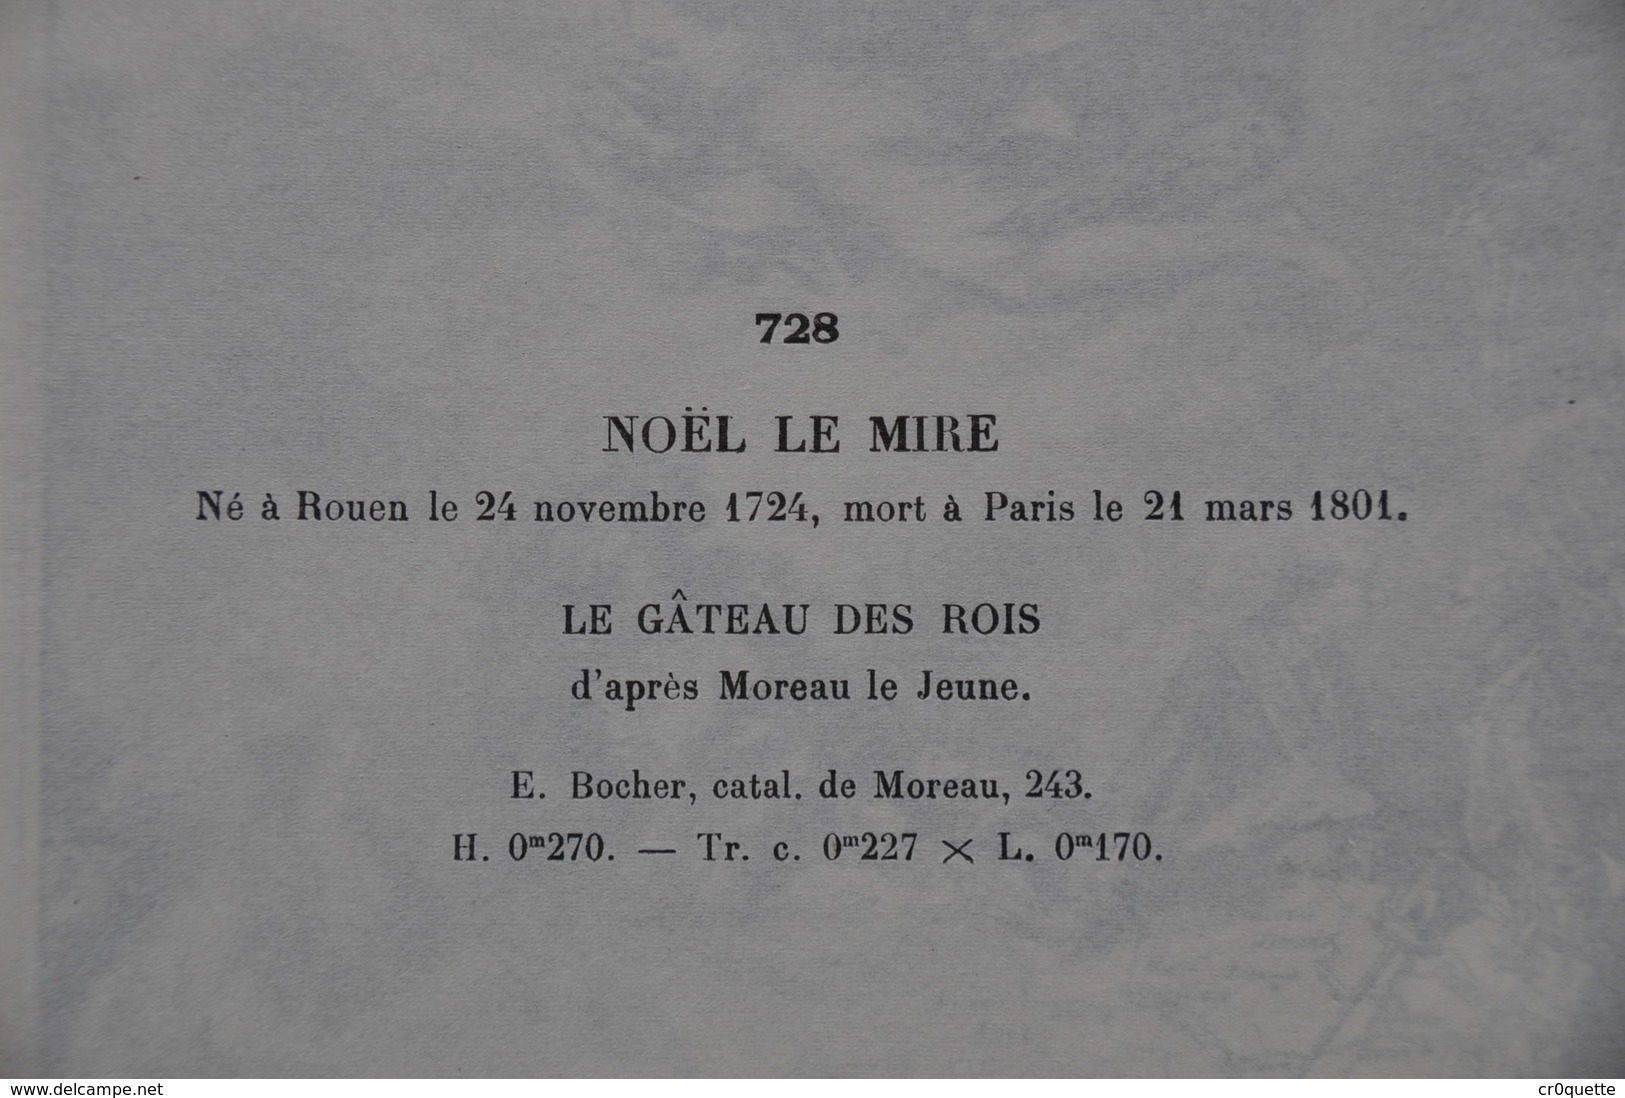 GRAVURE 728 / LE GÂTEAU DES ROIS Par NOËL LE MIRE Né à ROUEN En 1724 - Estampes & Gravures